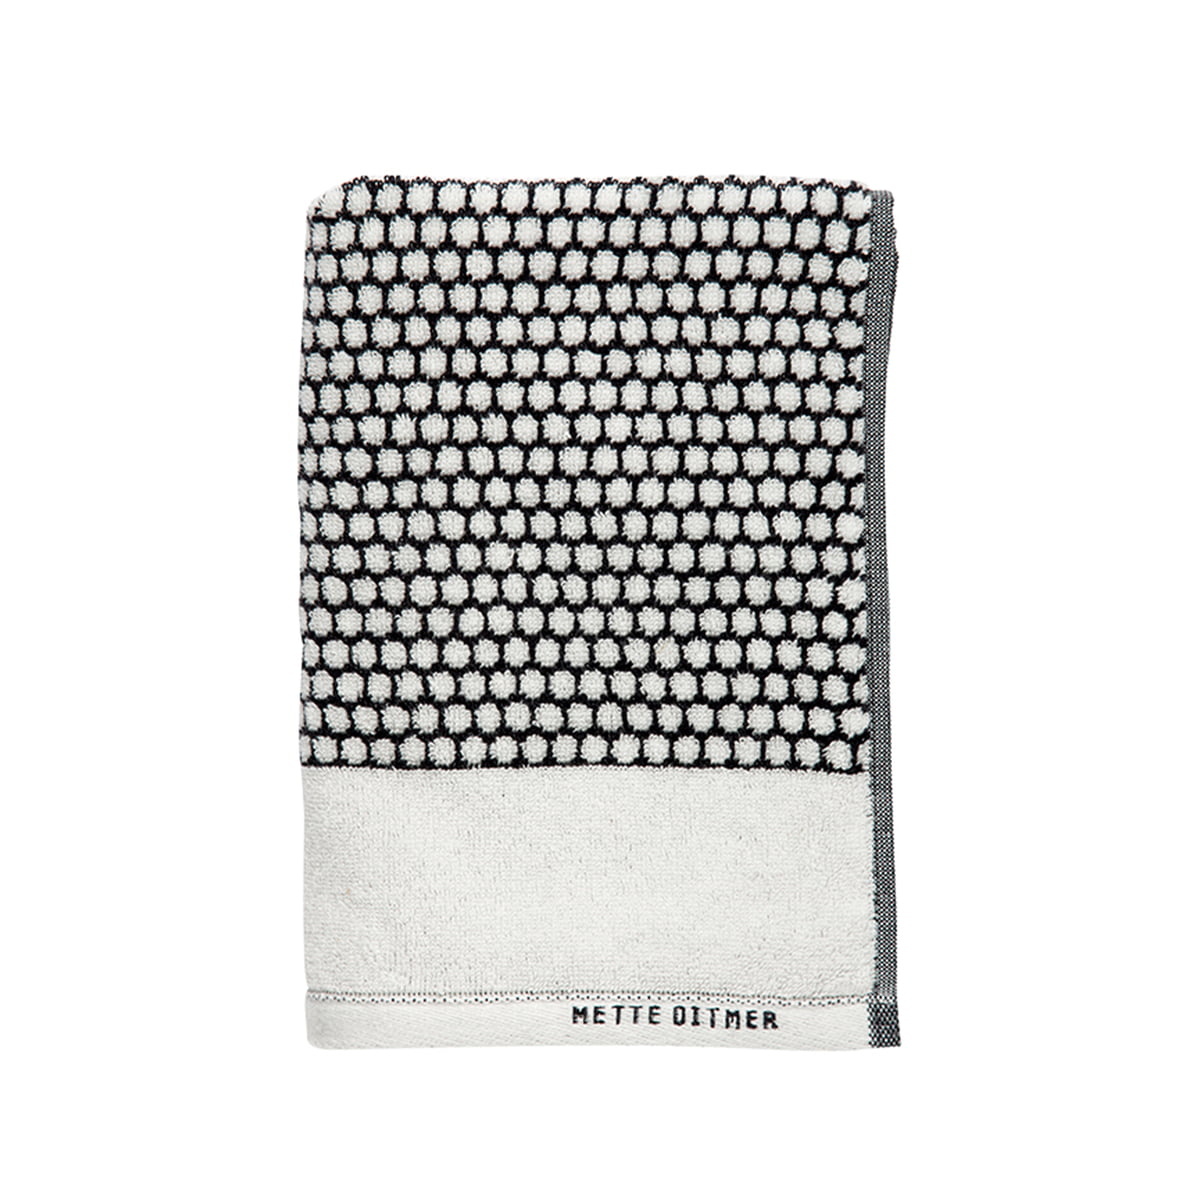 Mette Ditmer - GRID towel 50x100 - Black - Hjemme og kjøkken